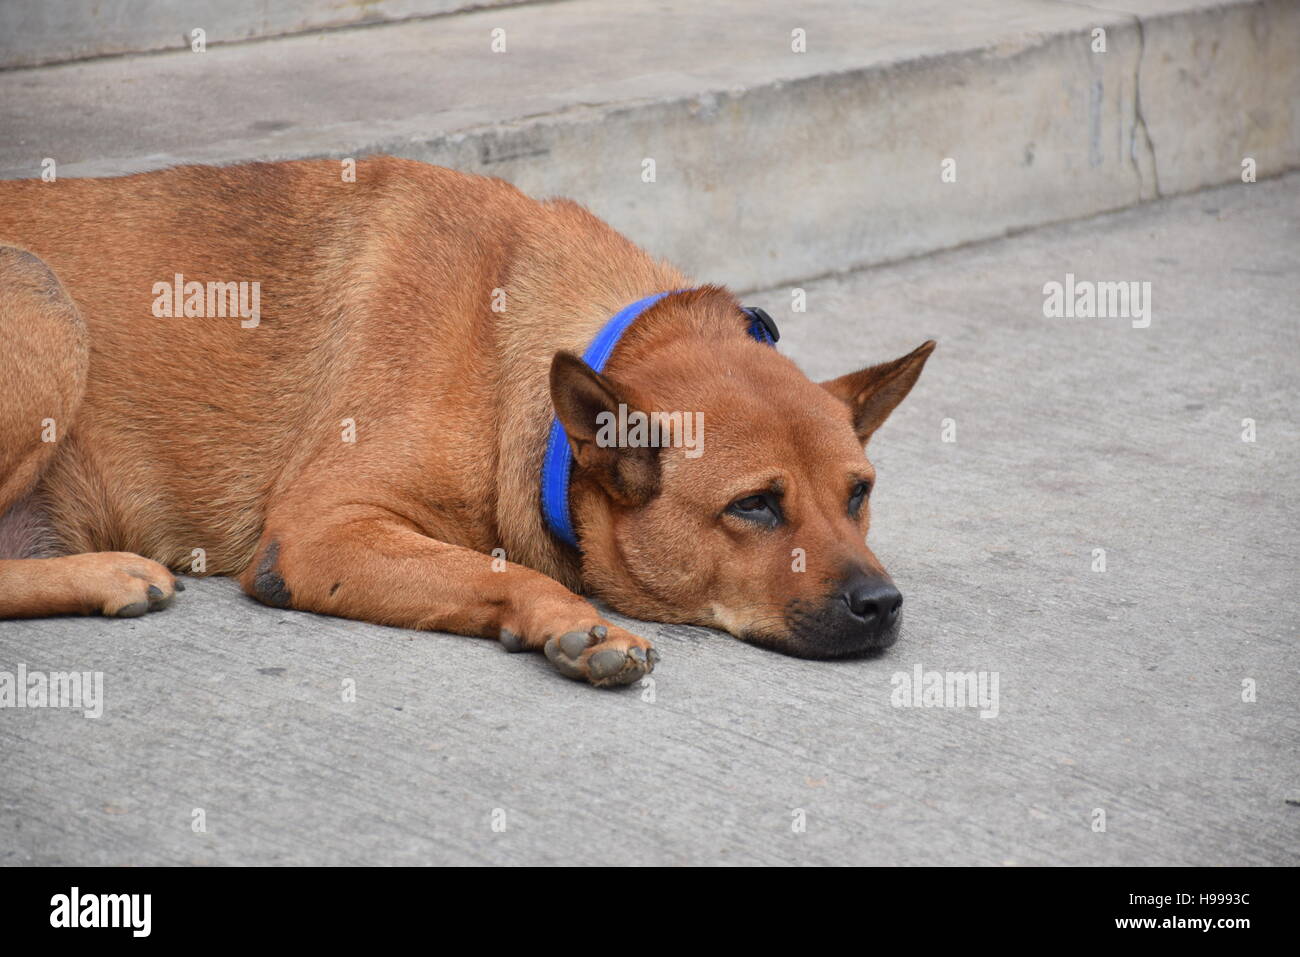 Close-up di un cane marrone con collare blu in appoggio sulla strada Foto Stock